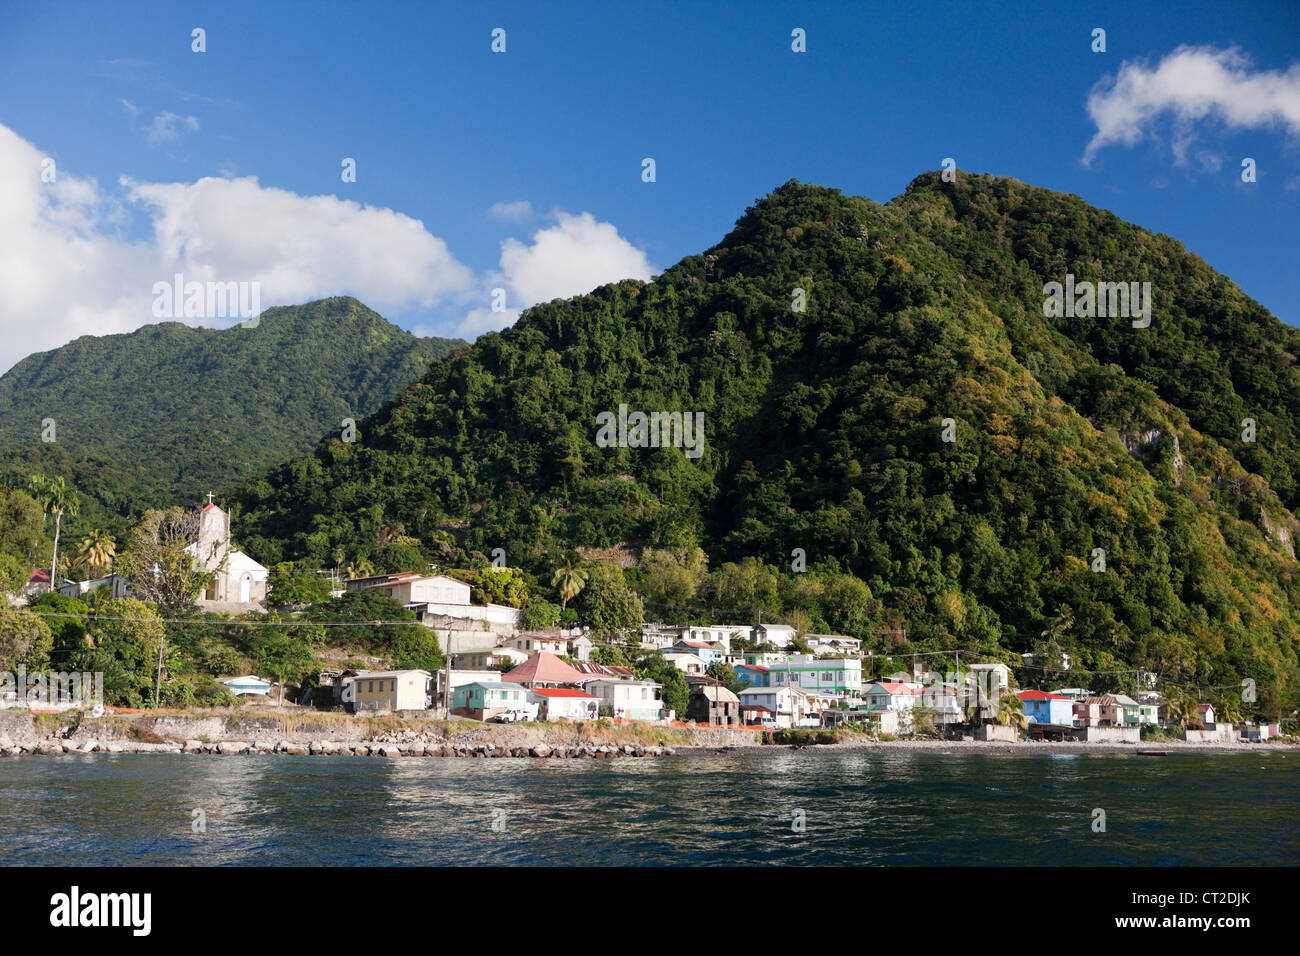 Coast close to Roseau, Caribbean Sea, Dominica Stock Photo